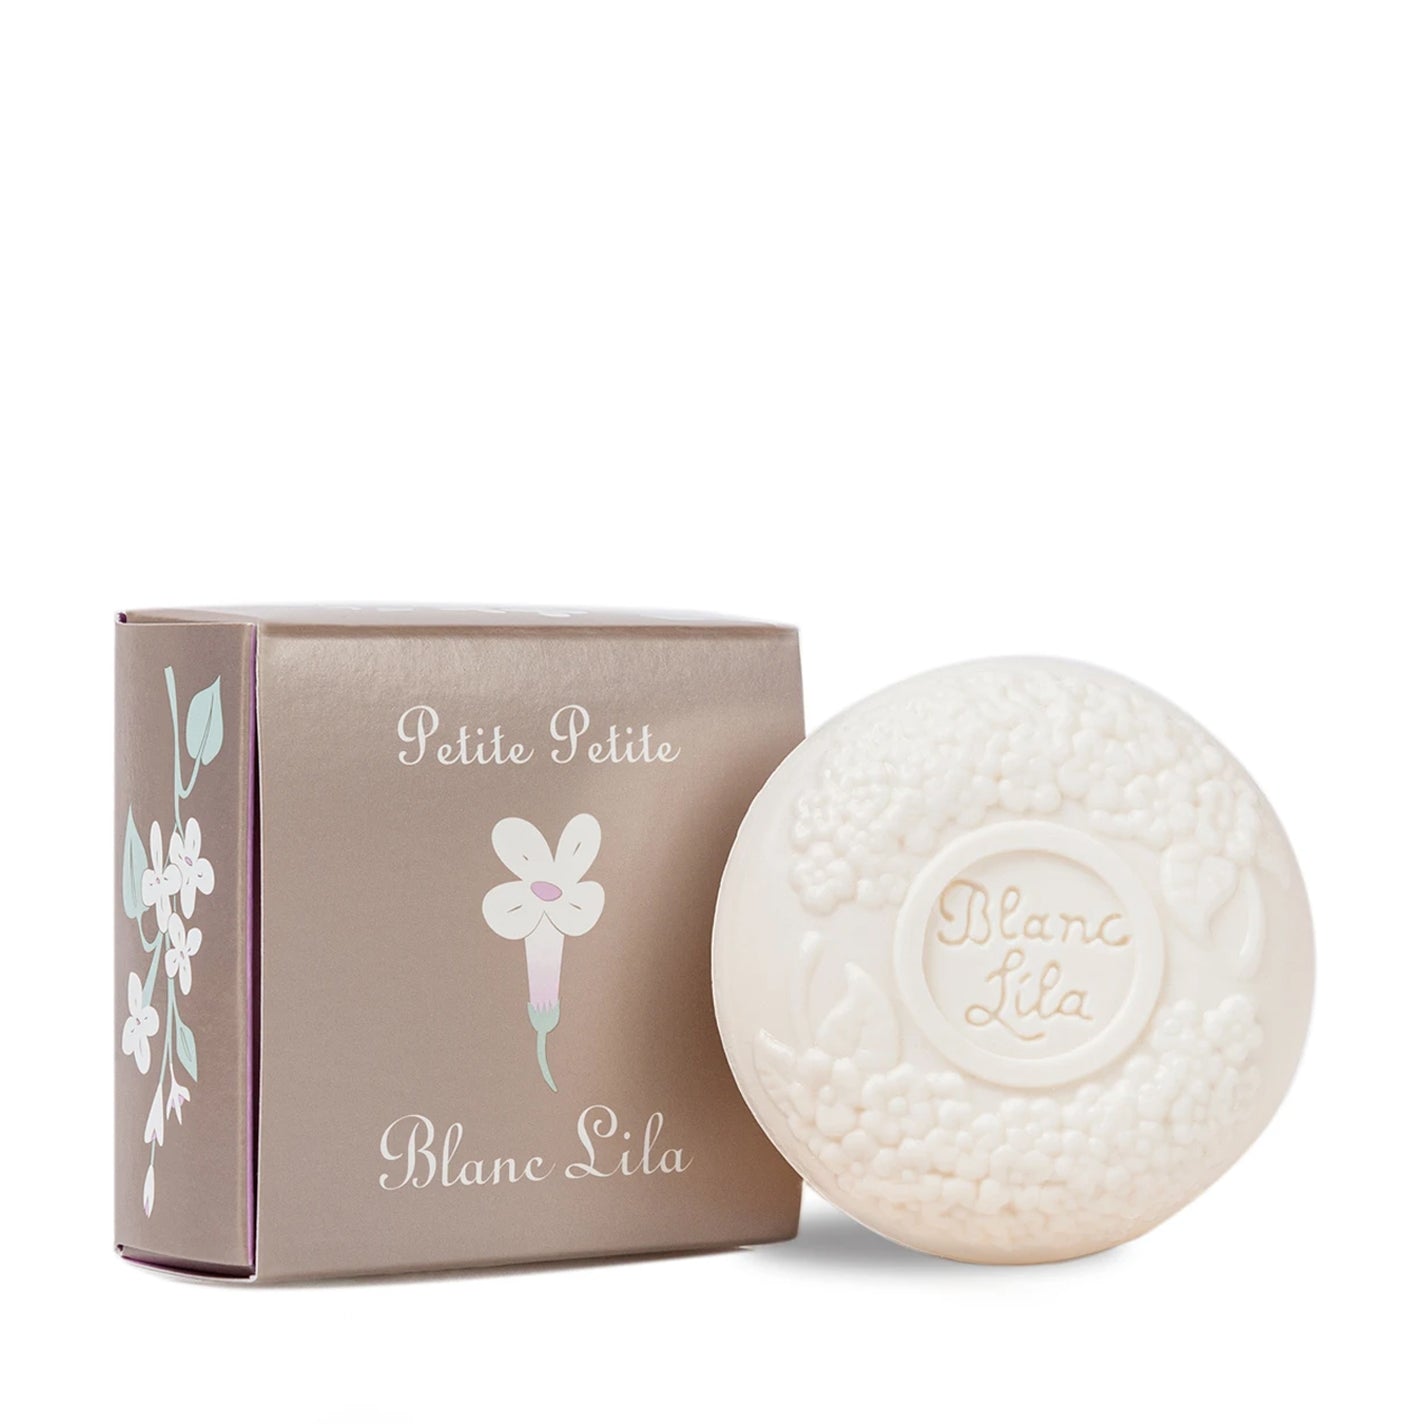 Kalastyle Blanc Lila Petite Soap